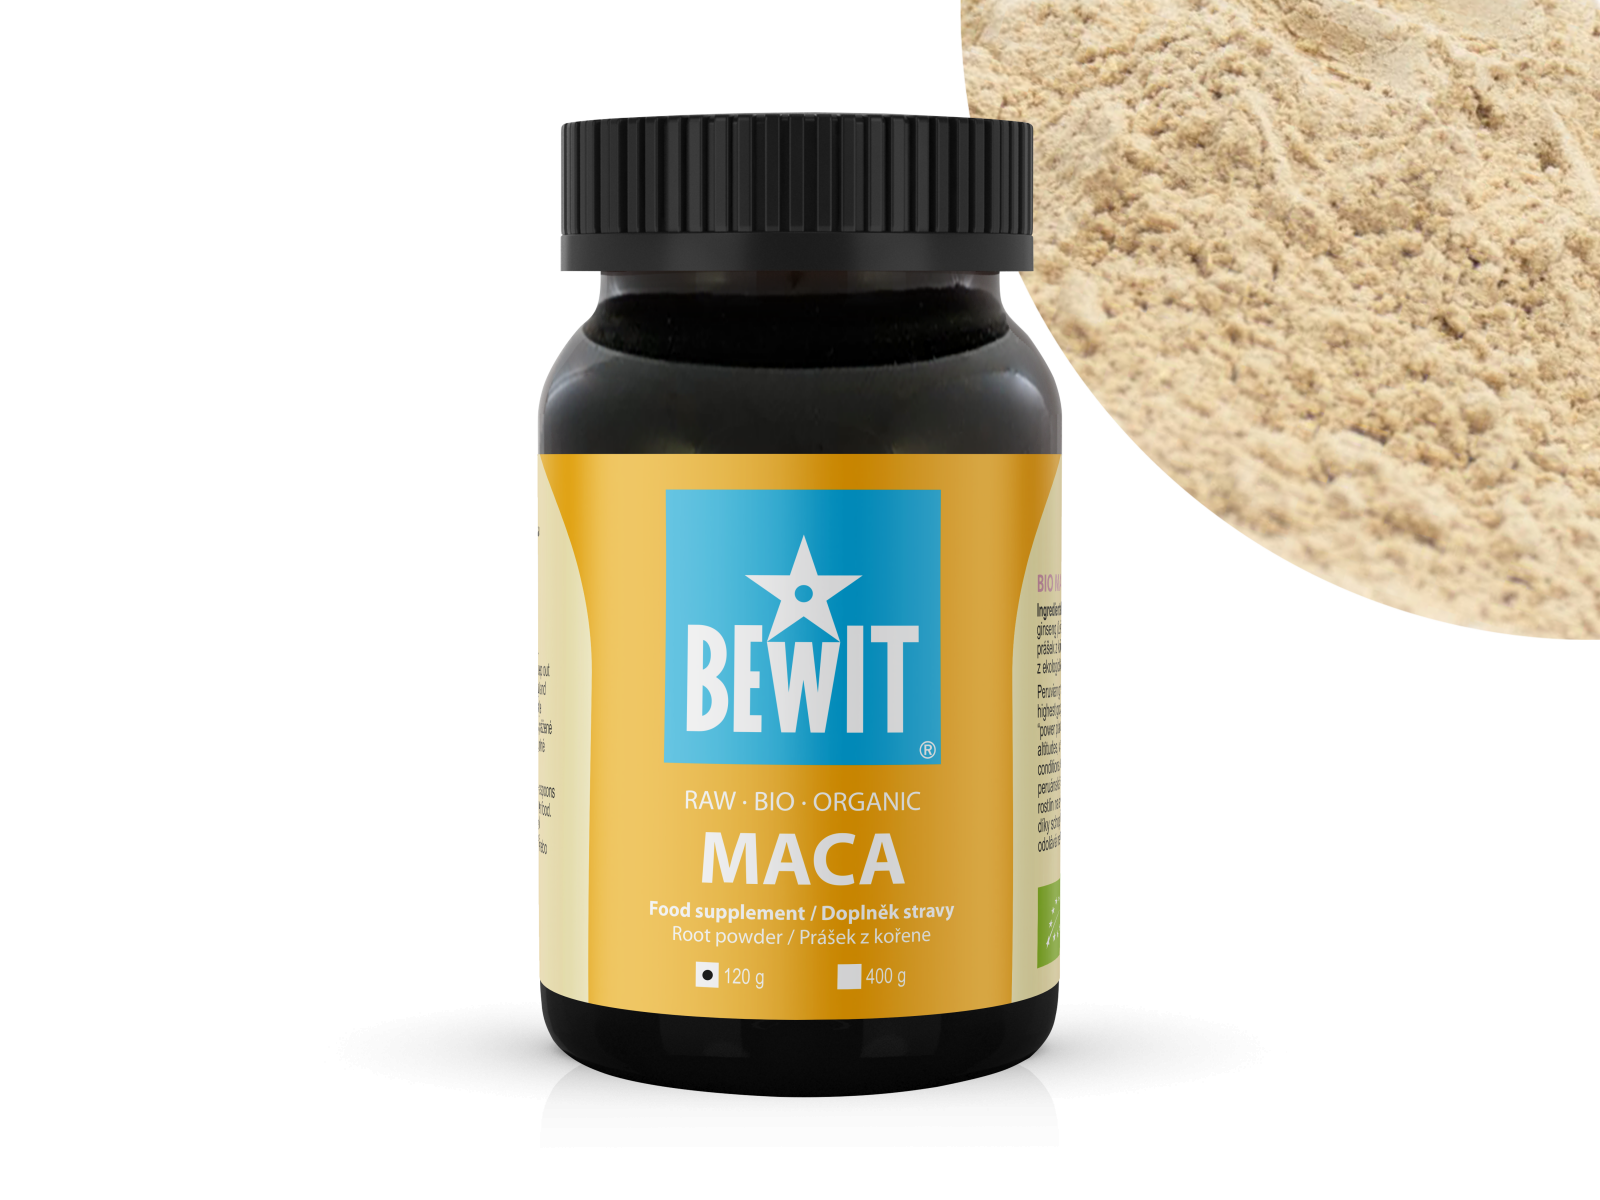 BEWIT BIO RAW MACA - Maca peruánská, prášek z kořene, doplněk stravy